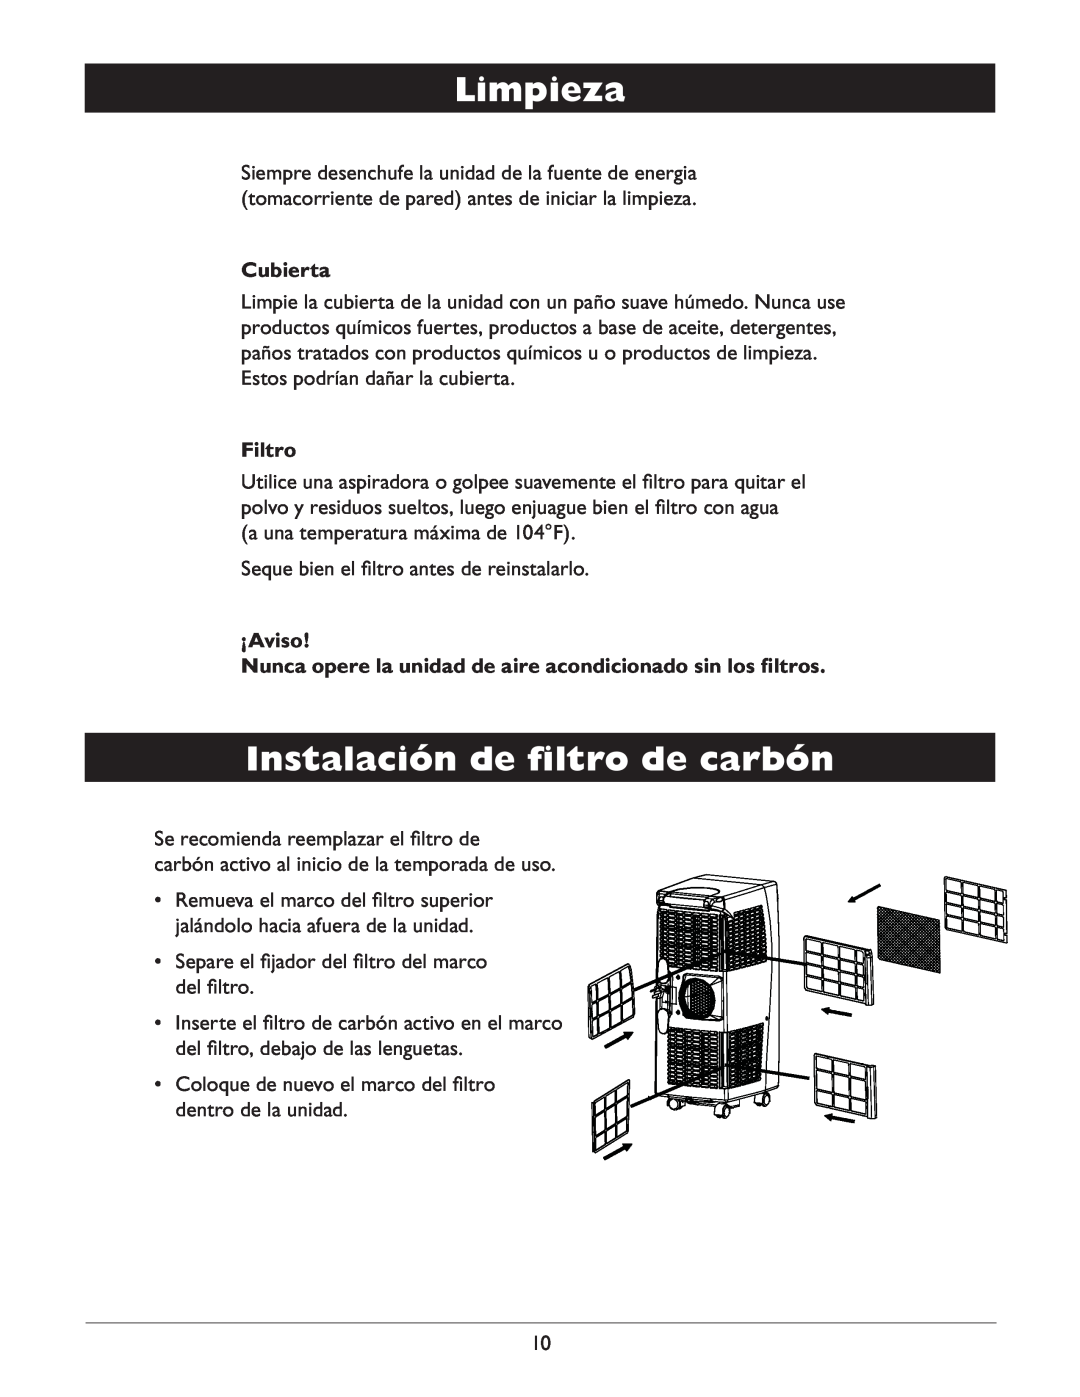 Amcor CF14000E owner manual Limpieza, Instalación de ﬁltro de carbón, Cubierta, Filtro, ¡Aviso 